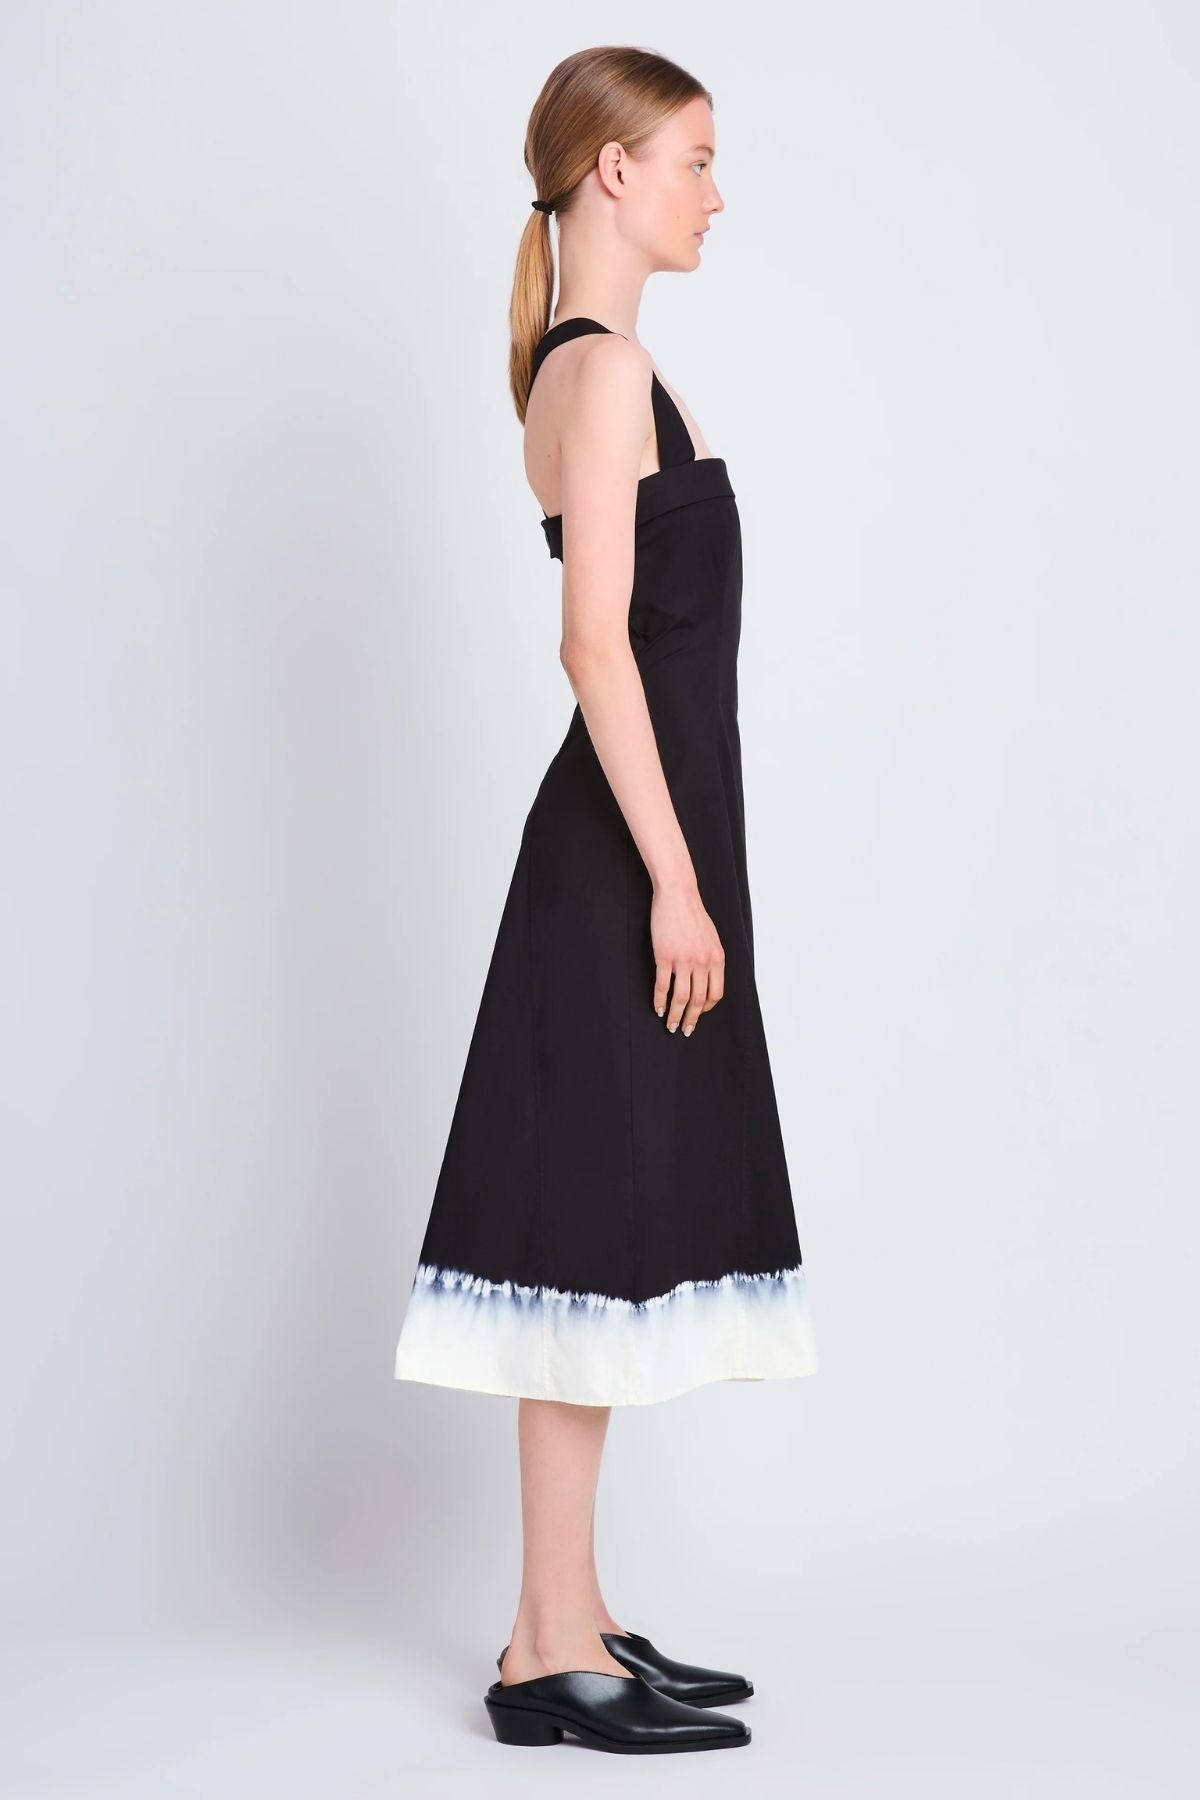 Proenza Schouler White Label Edie Dip Dye Cotton Dress - Black/ White